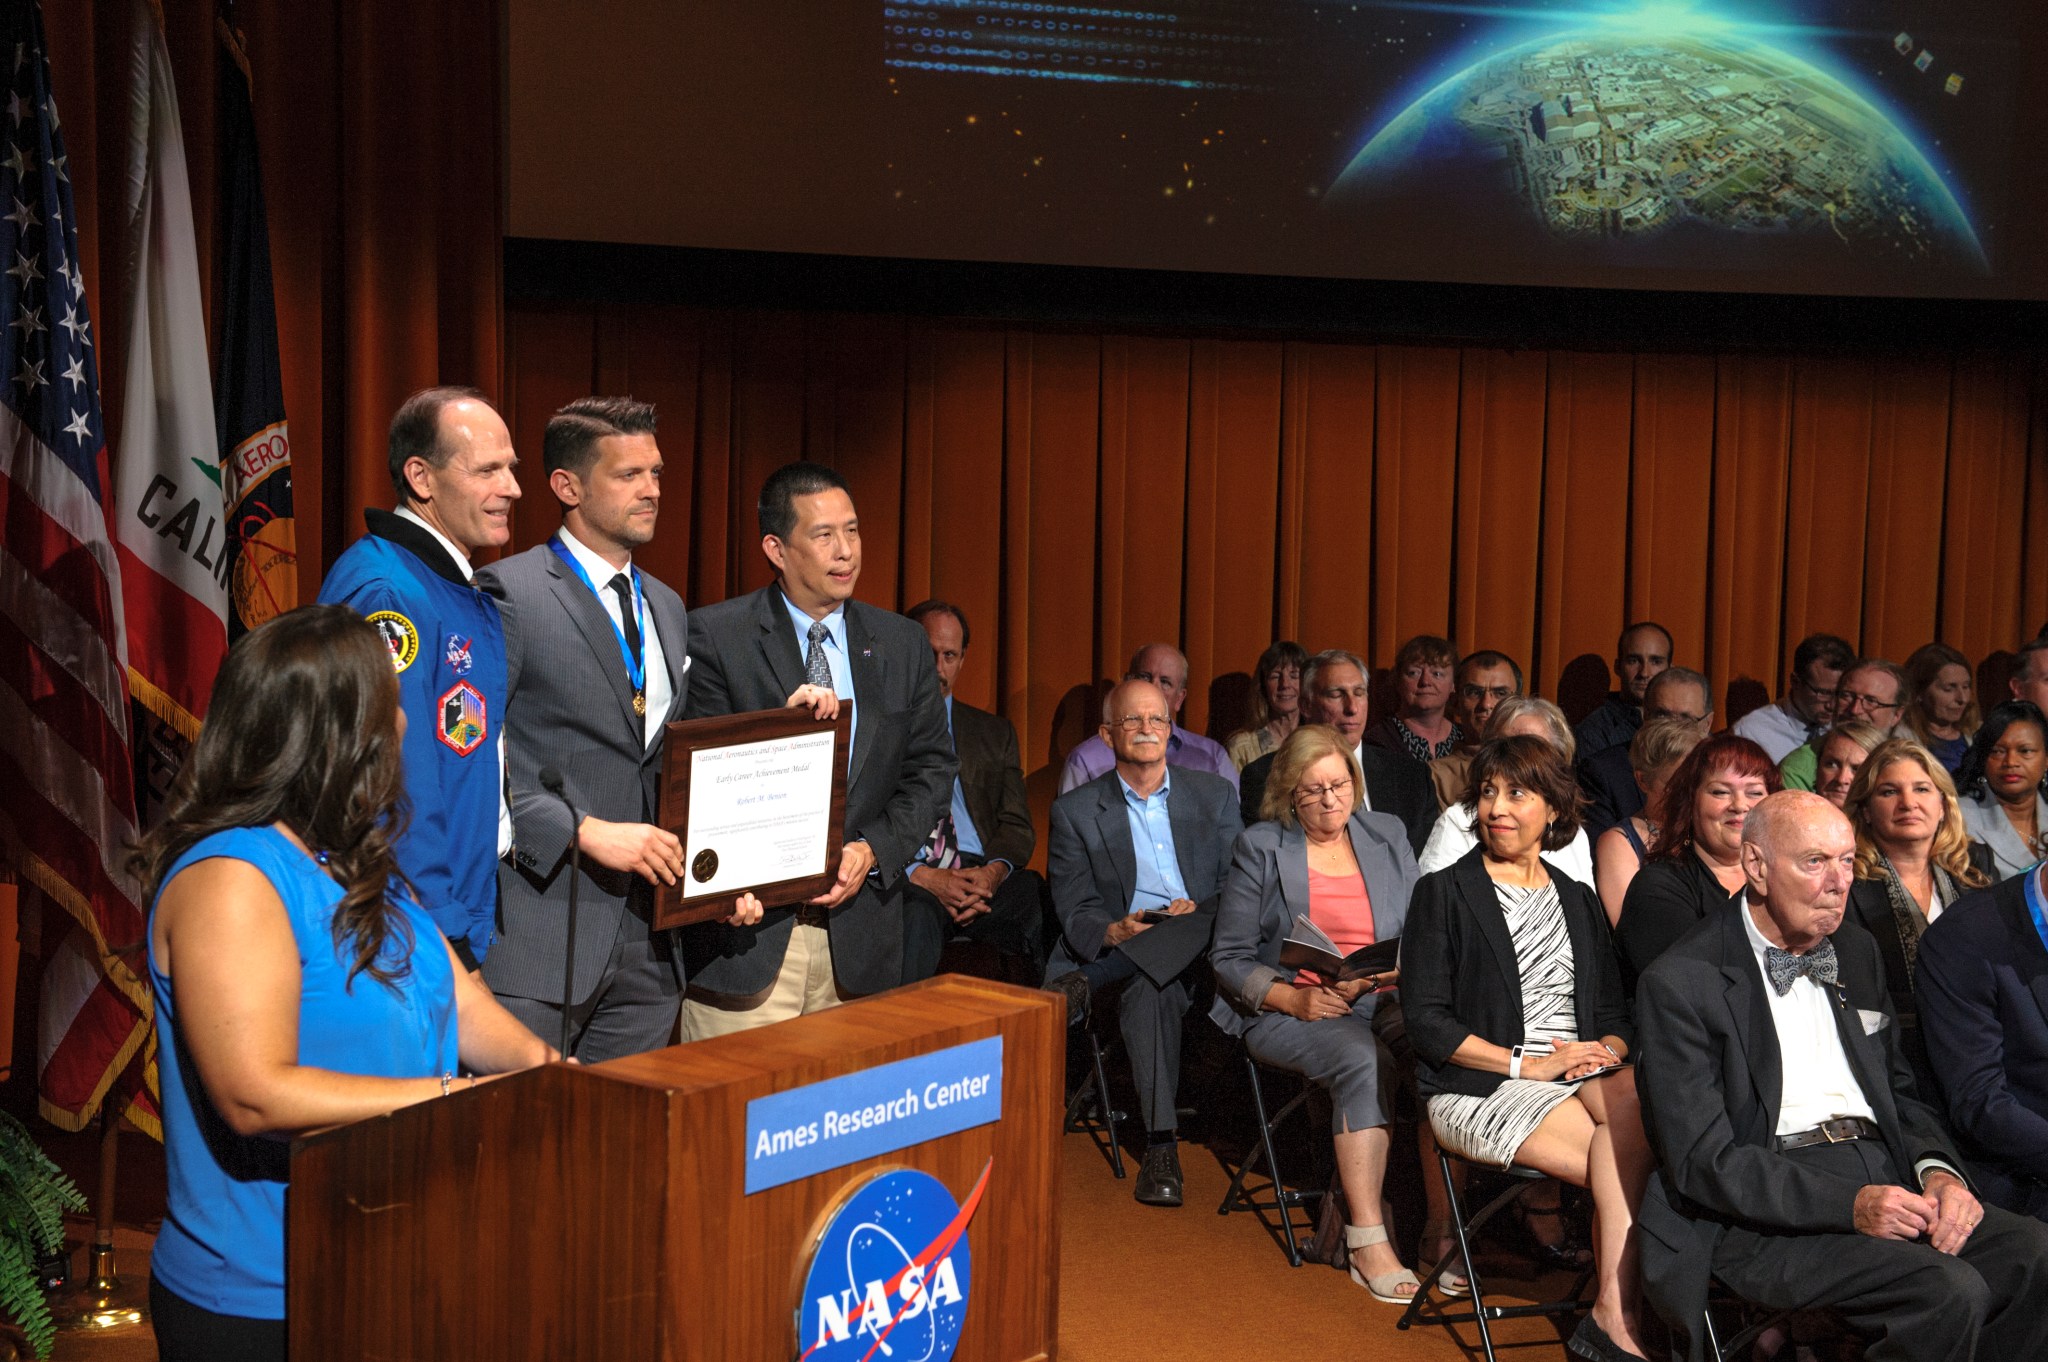 NASA Honor Awards at Ames